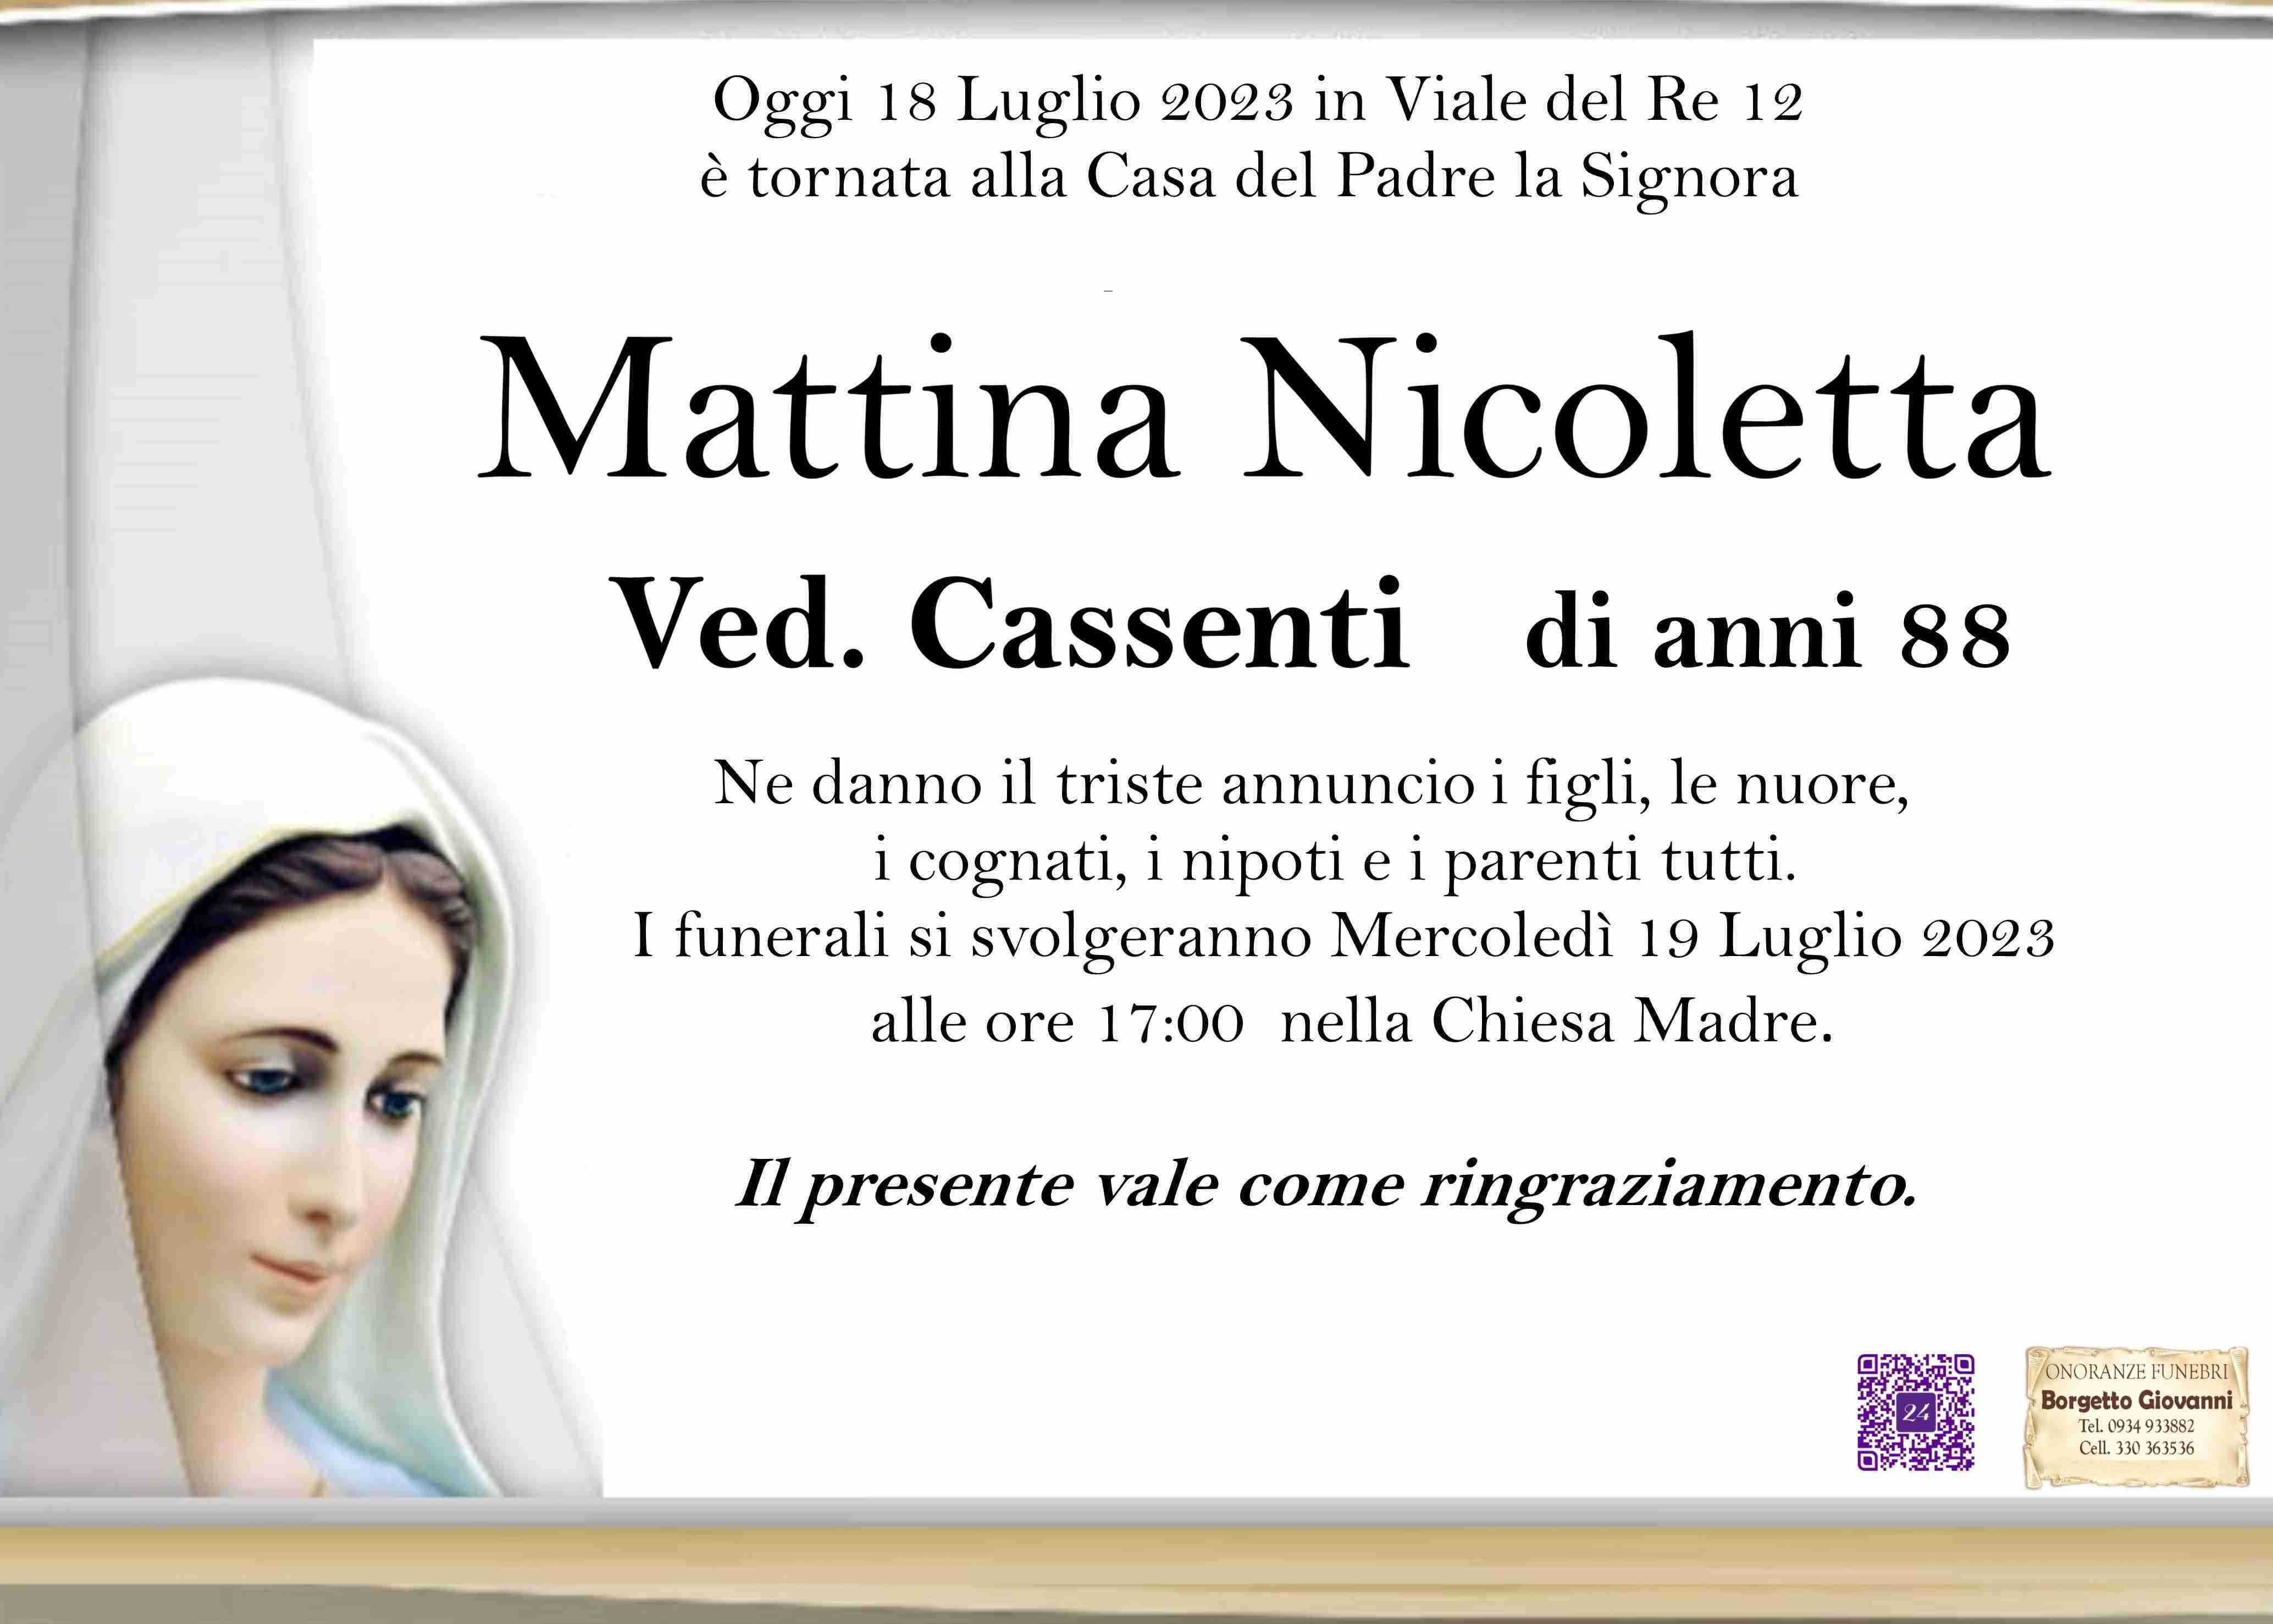 Nicoletta Mattina